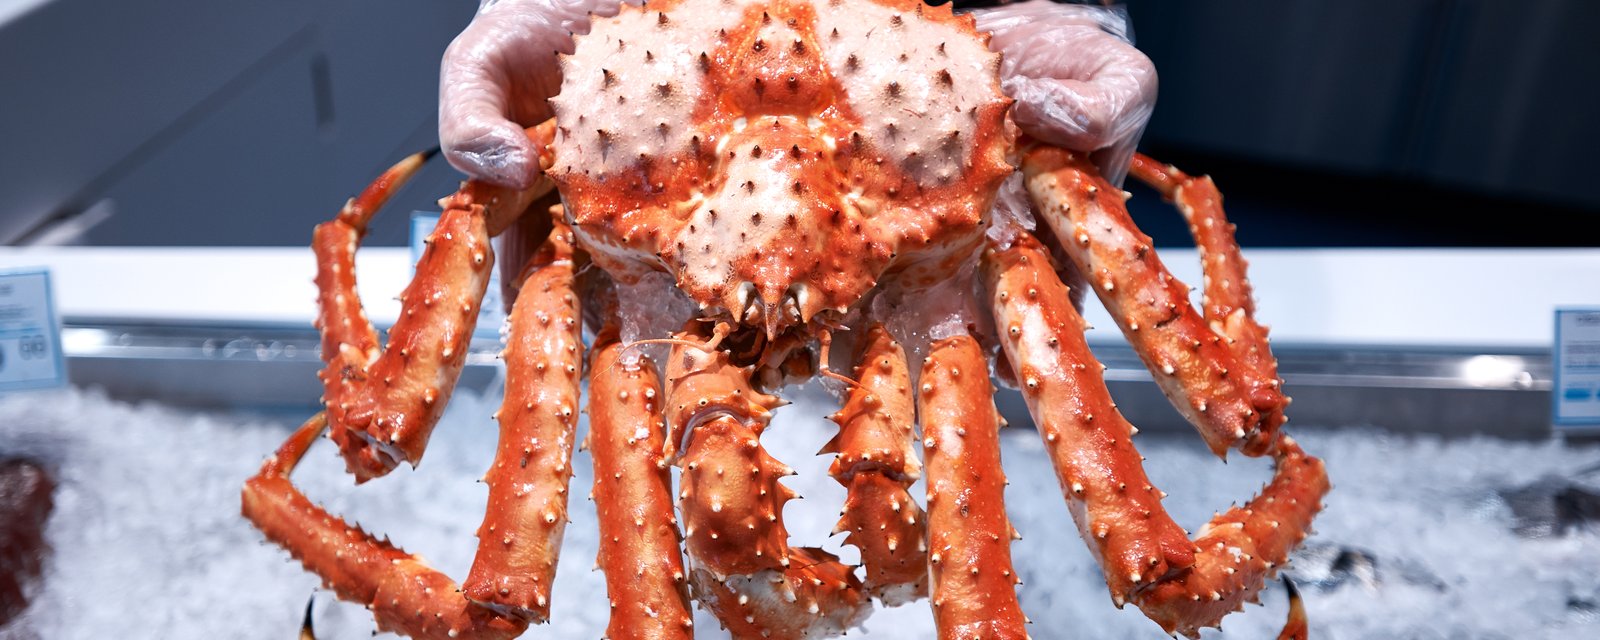 Les Québécois capotent avec le prix du crabe des neige et le boudent.